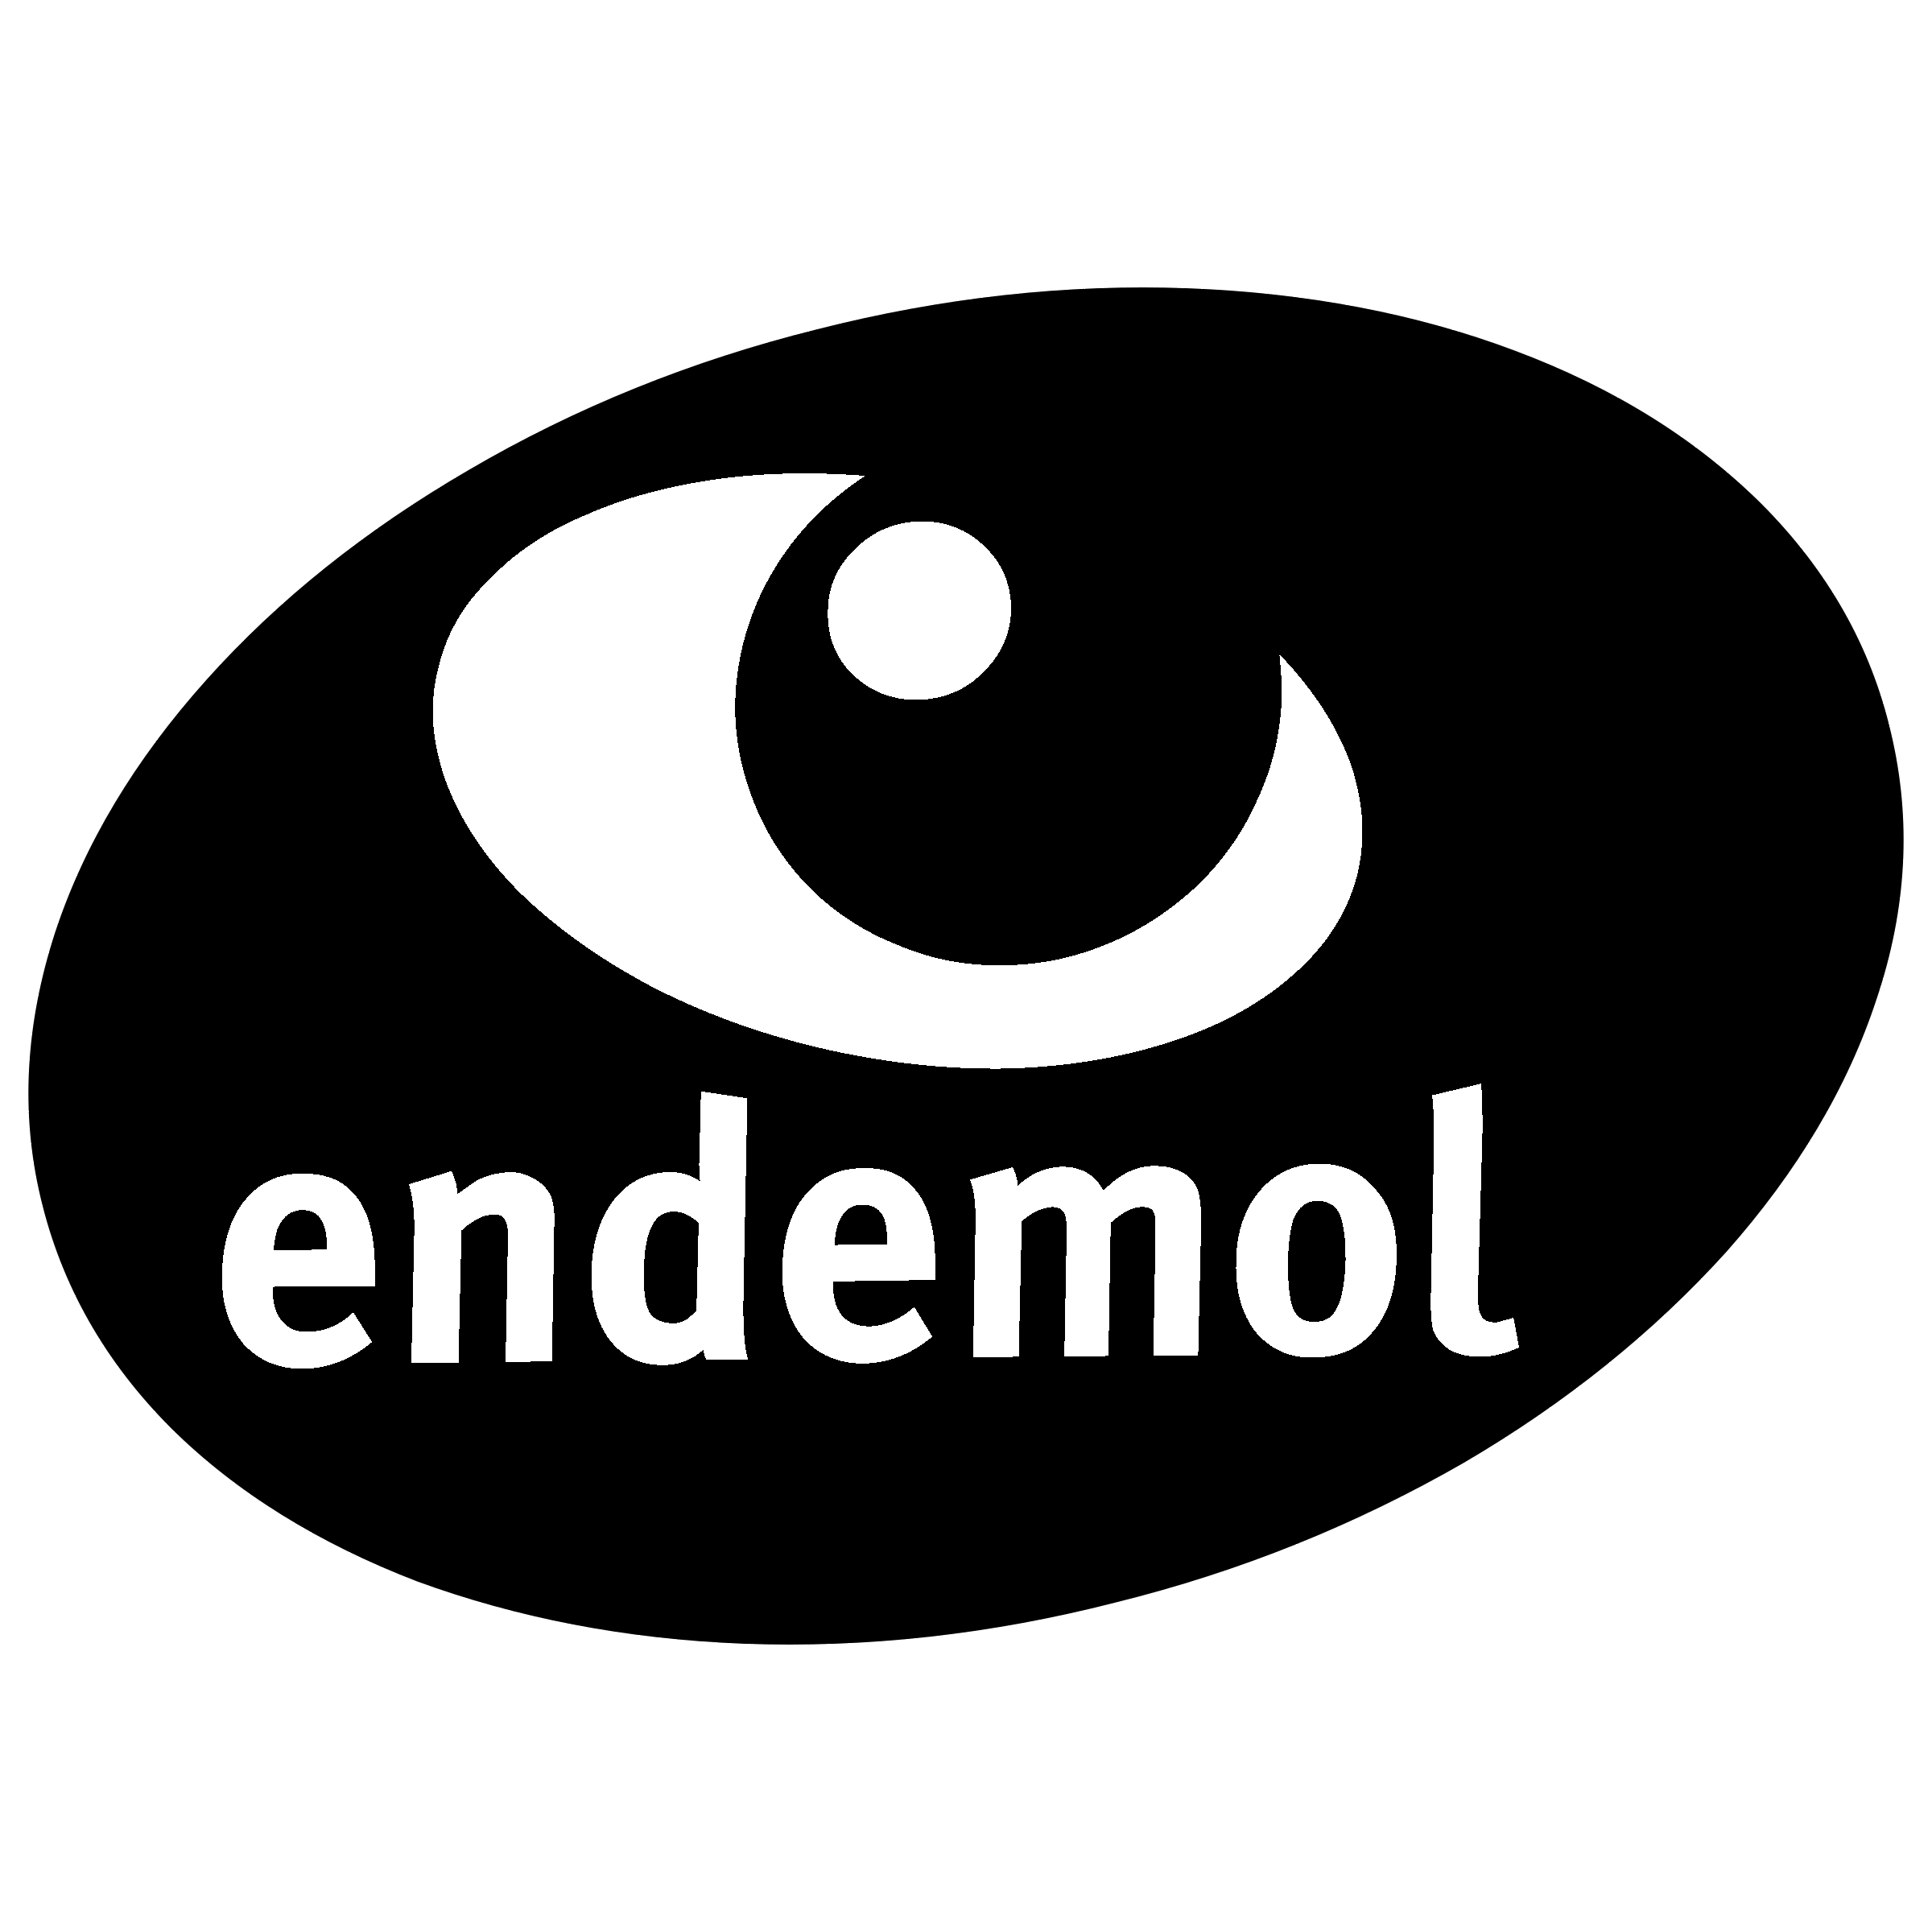 Endemol Logo - Endemol Logo PNG Transparent & SVG Vector